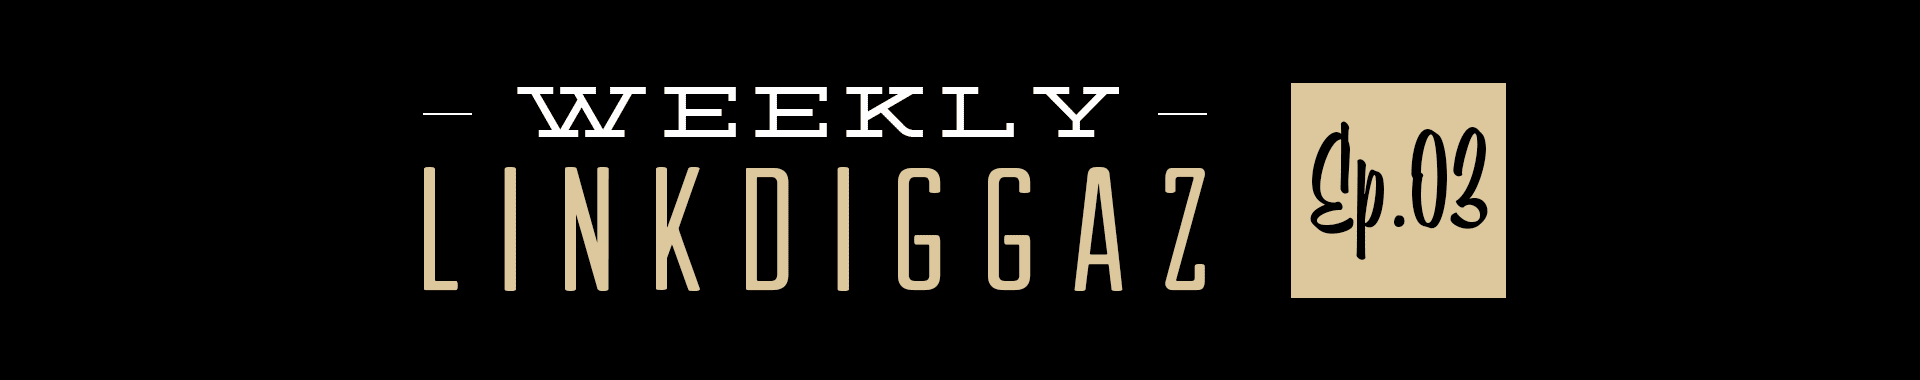 Weekly Linkdiggaz Ep.03